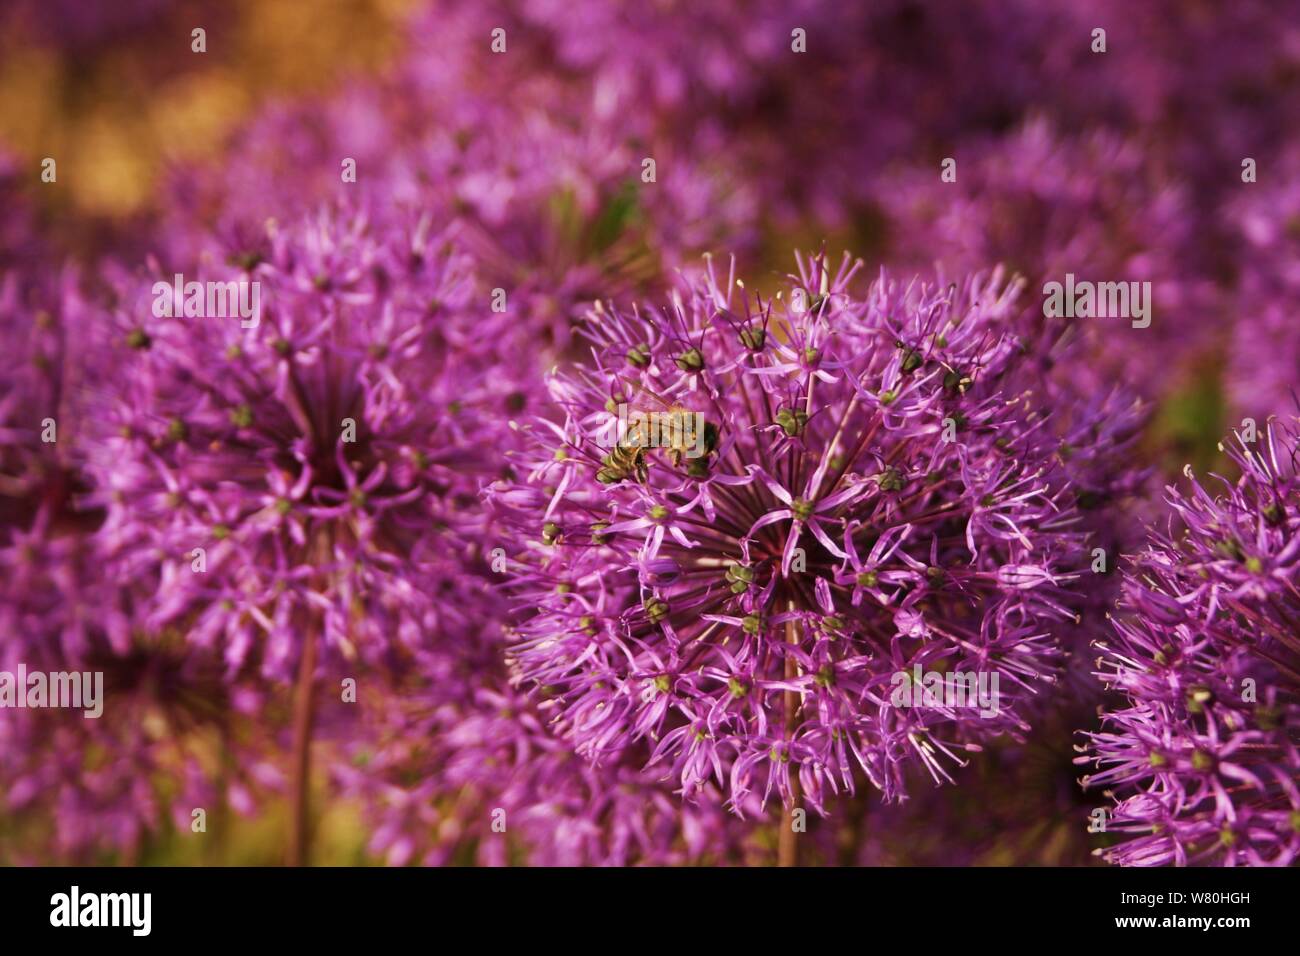 Seule abeille sur une fleur d'allium violet avec arrière-plan flou. Banque D'Images